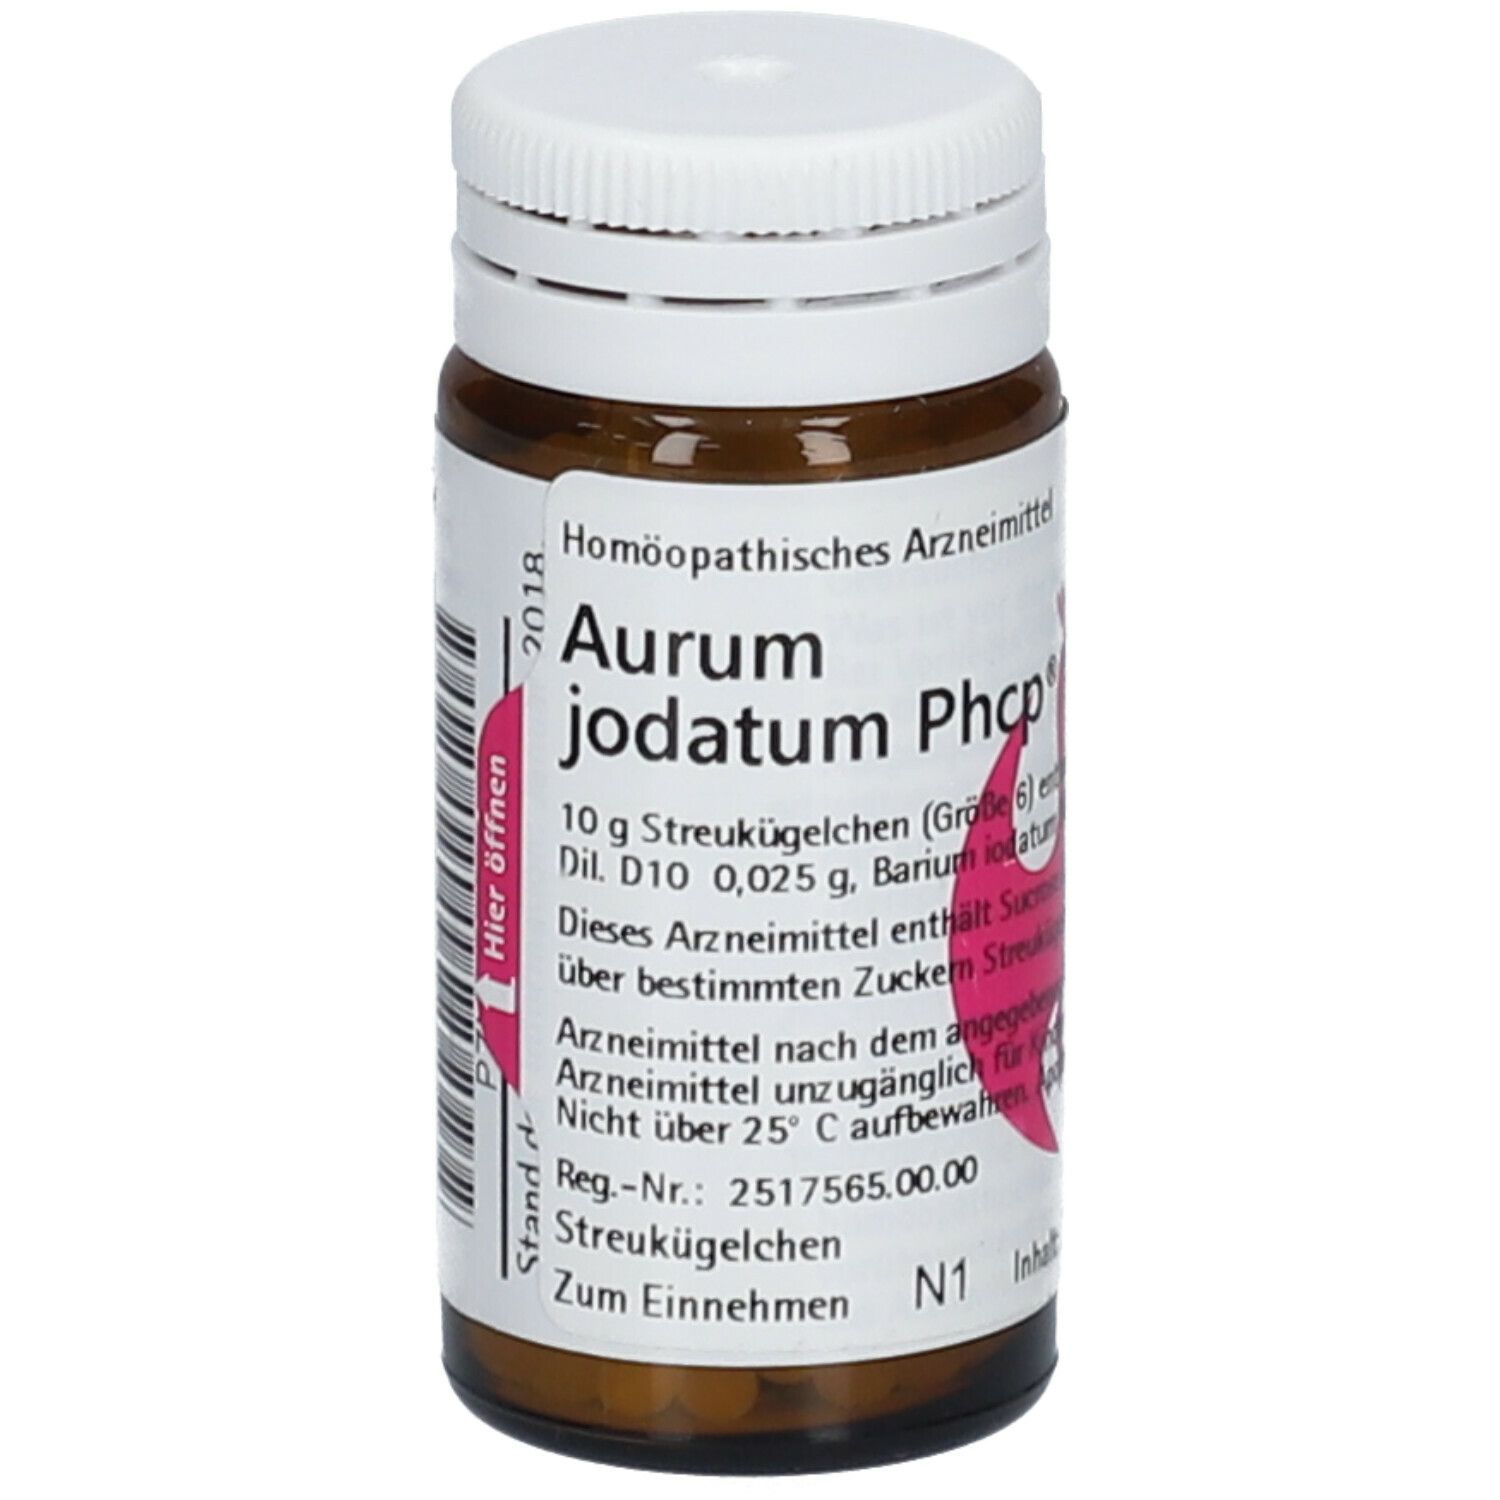 Aurum jodatum Phcp®